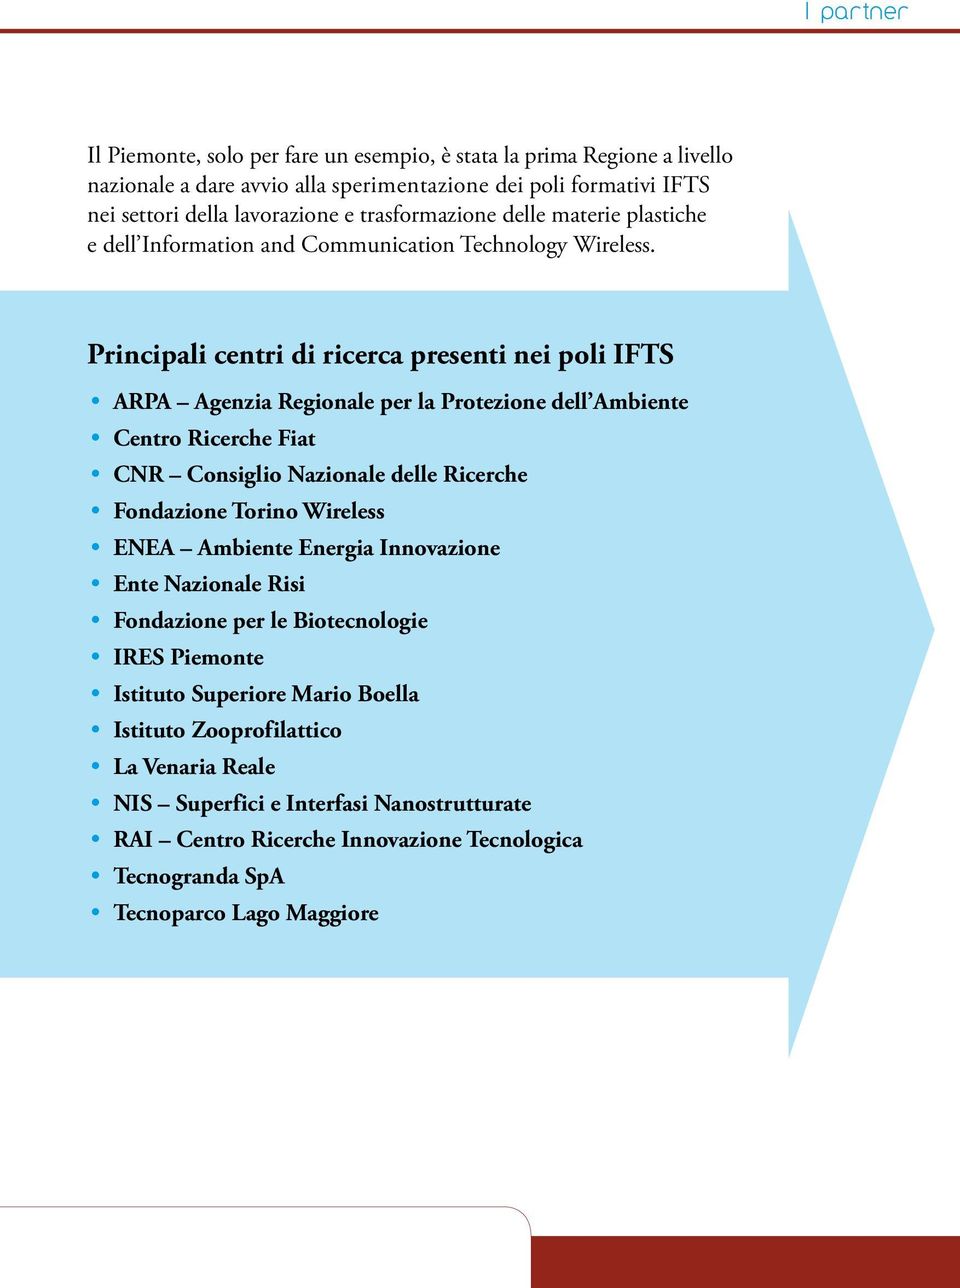 Principali centri di ricerca presenti nei poli IFTS ARPA Agenzia Regionale per la Protezione dell Ambiente Centro Ricerche Fiat CNR Consiglio Nazionale delle Ricerche Fondazione Torino Wireless